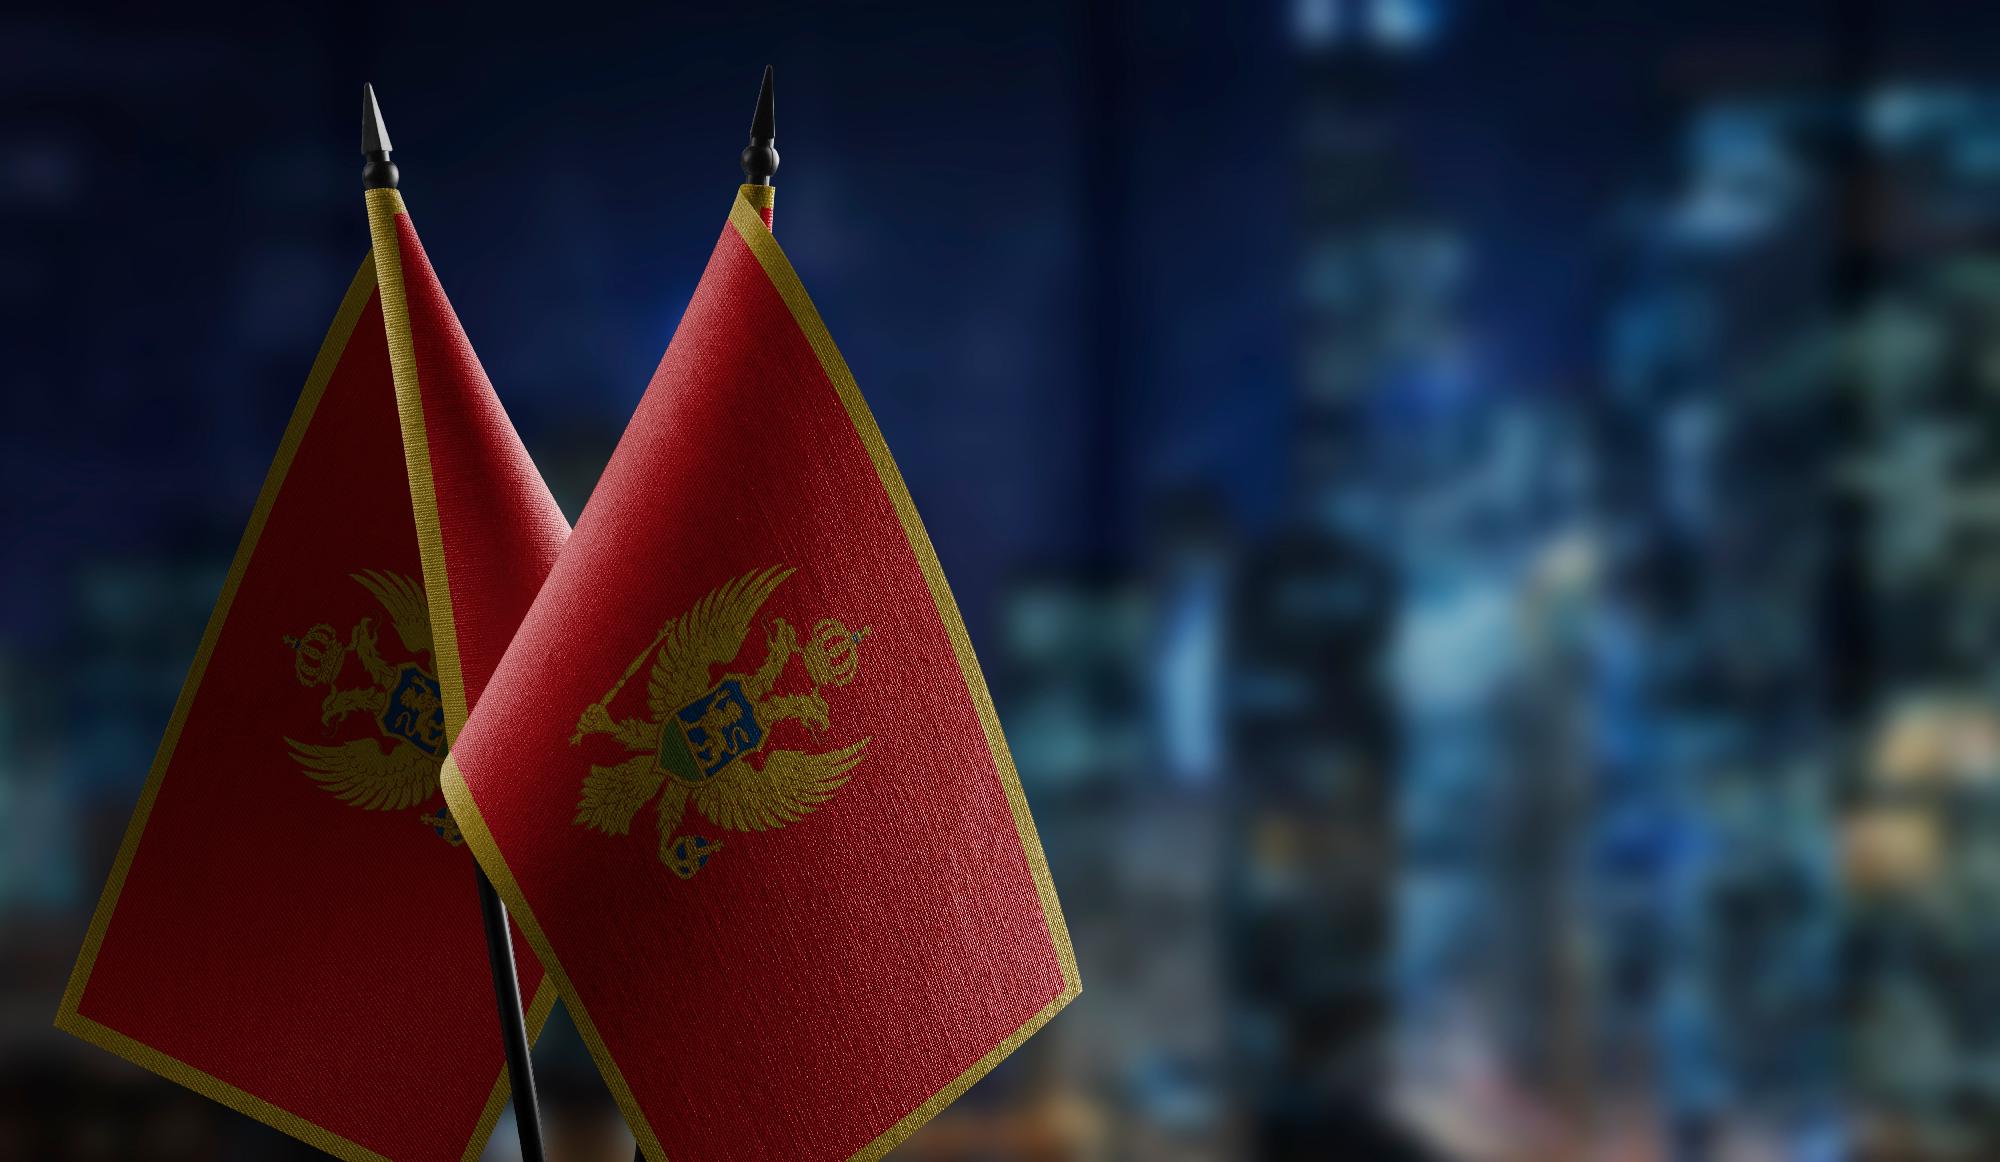 Parlamenti választásokat tartanak Montenegróban